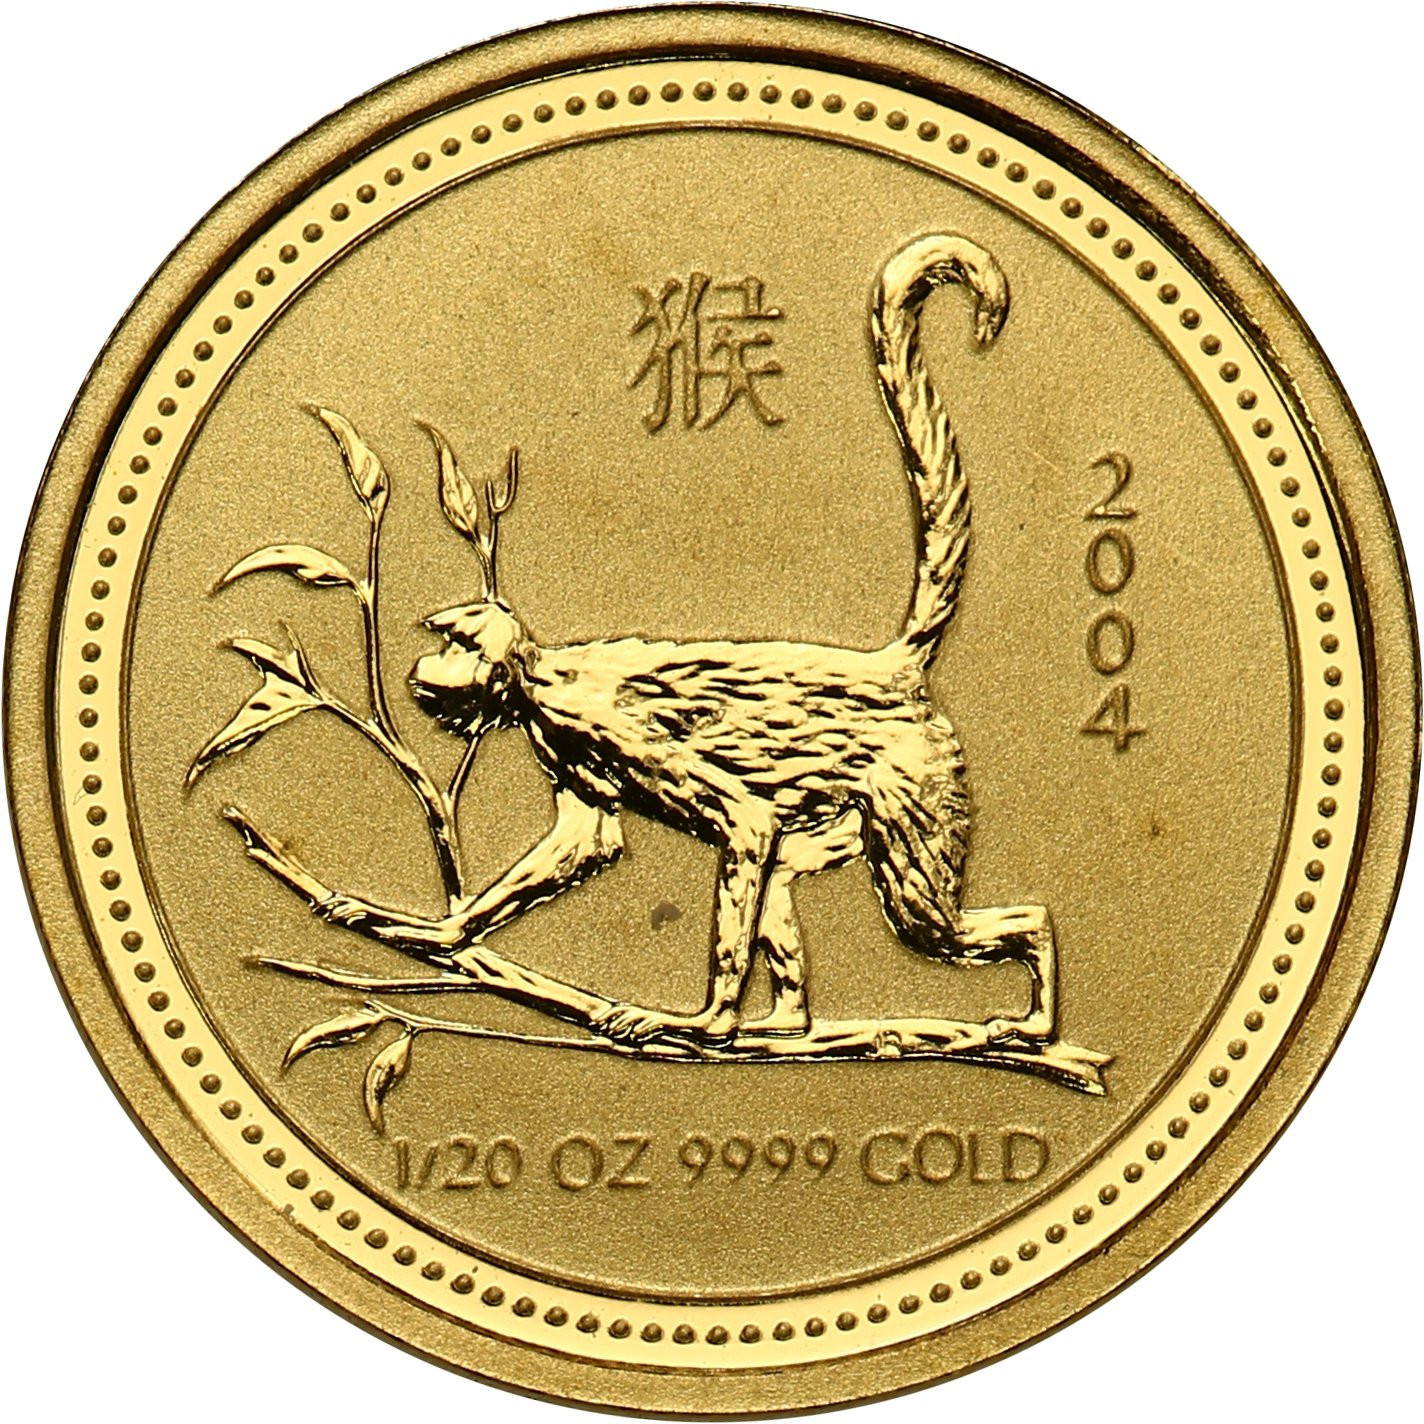 Australia. Złote 5 dolarów 2004 - ROK MAŁPY  - 1/20 uncji złota